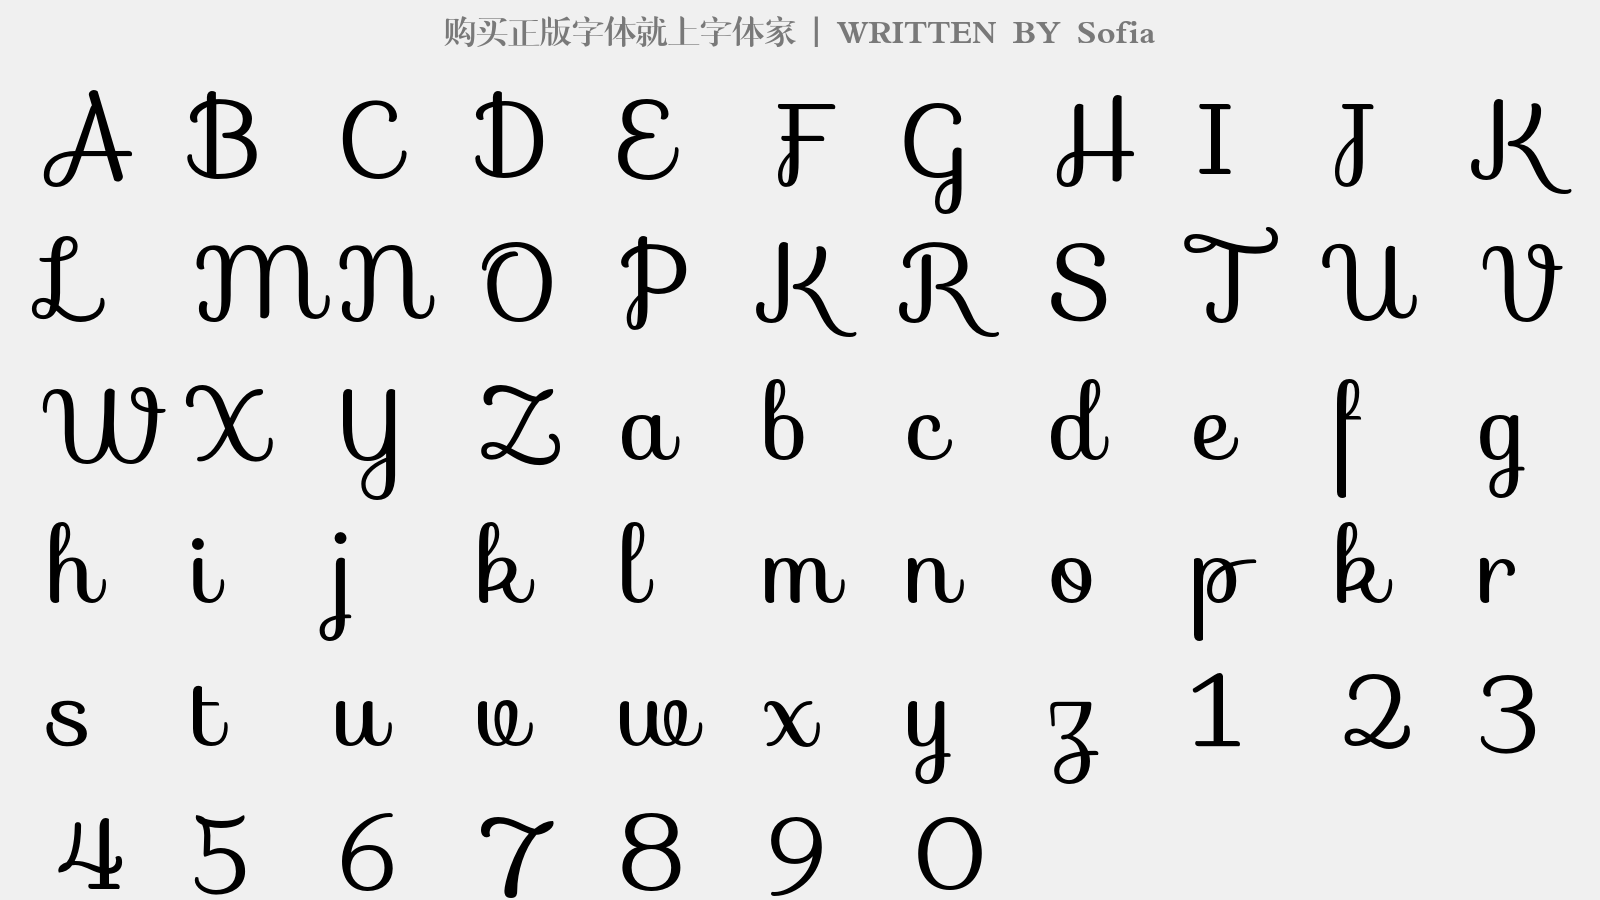 Sofia - 大写字母/小写字母/数字